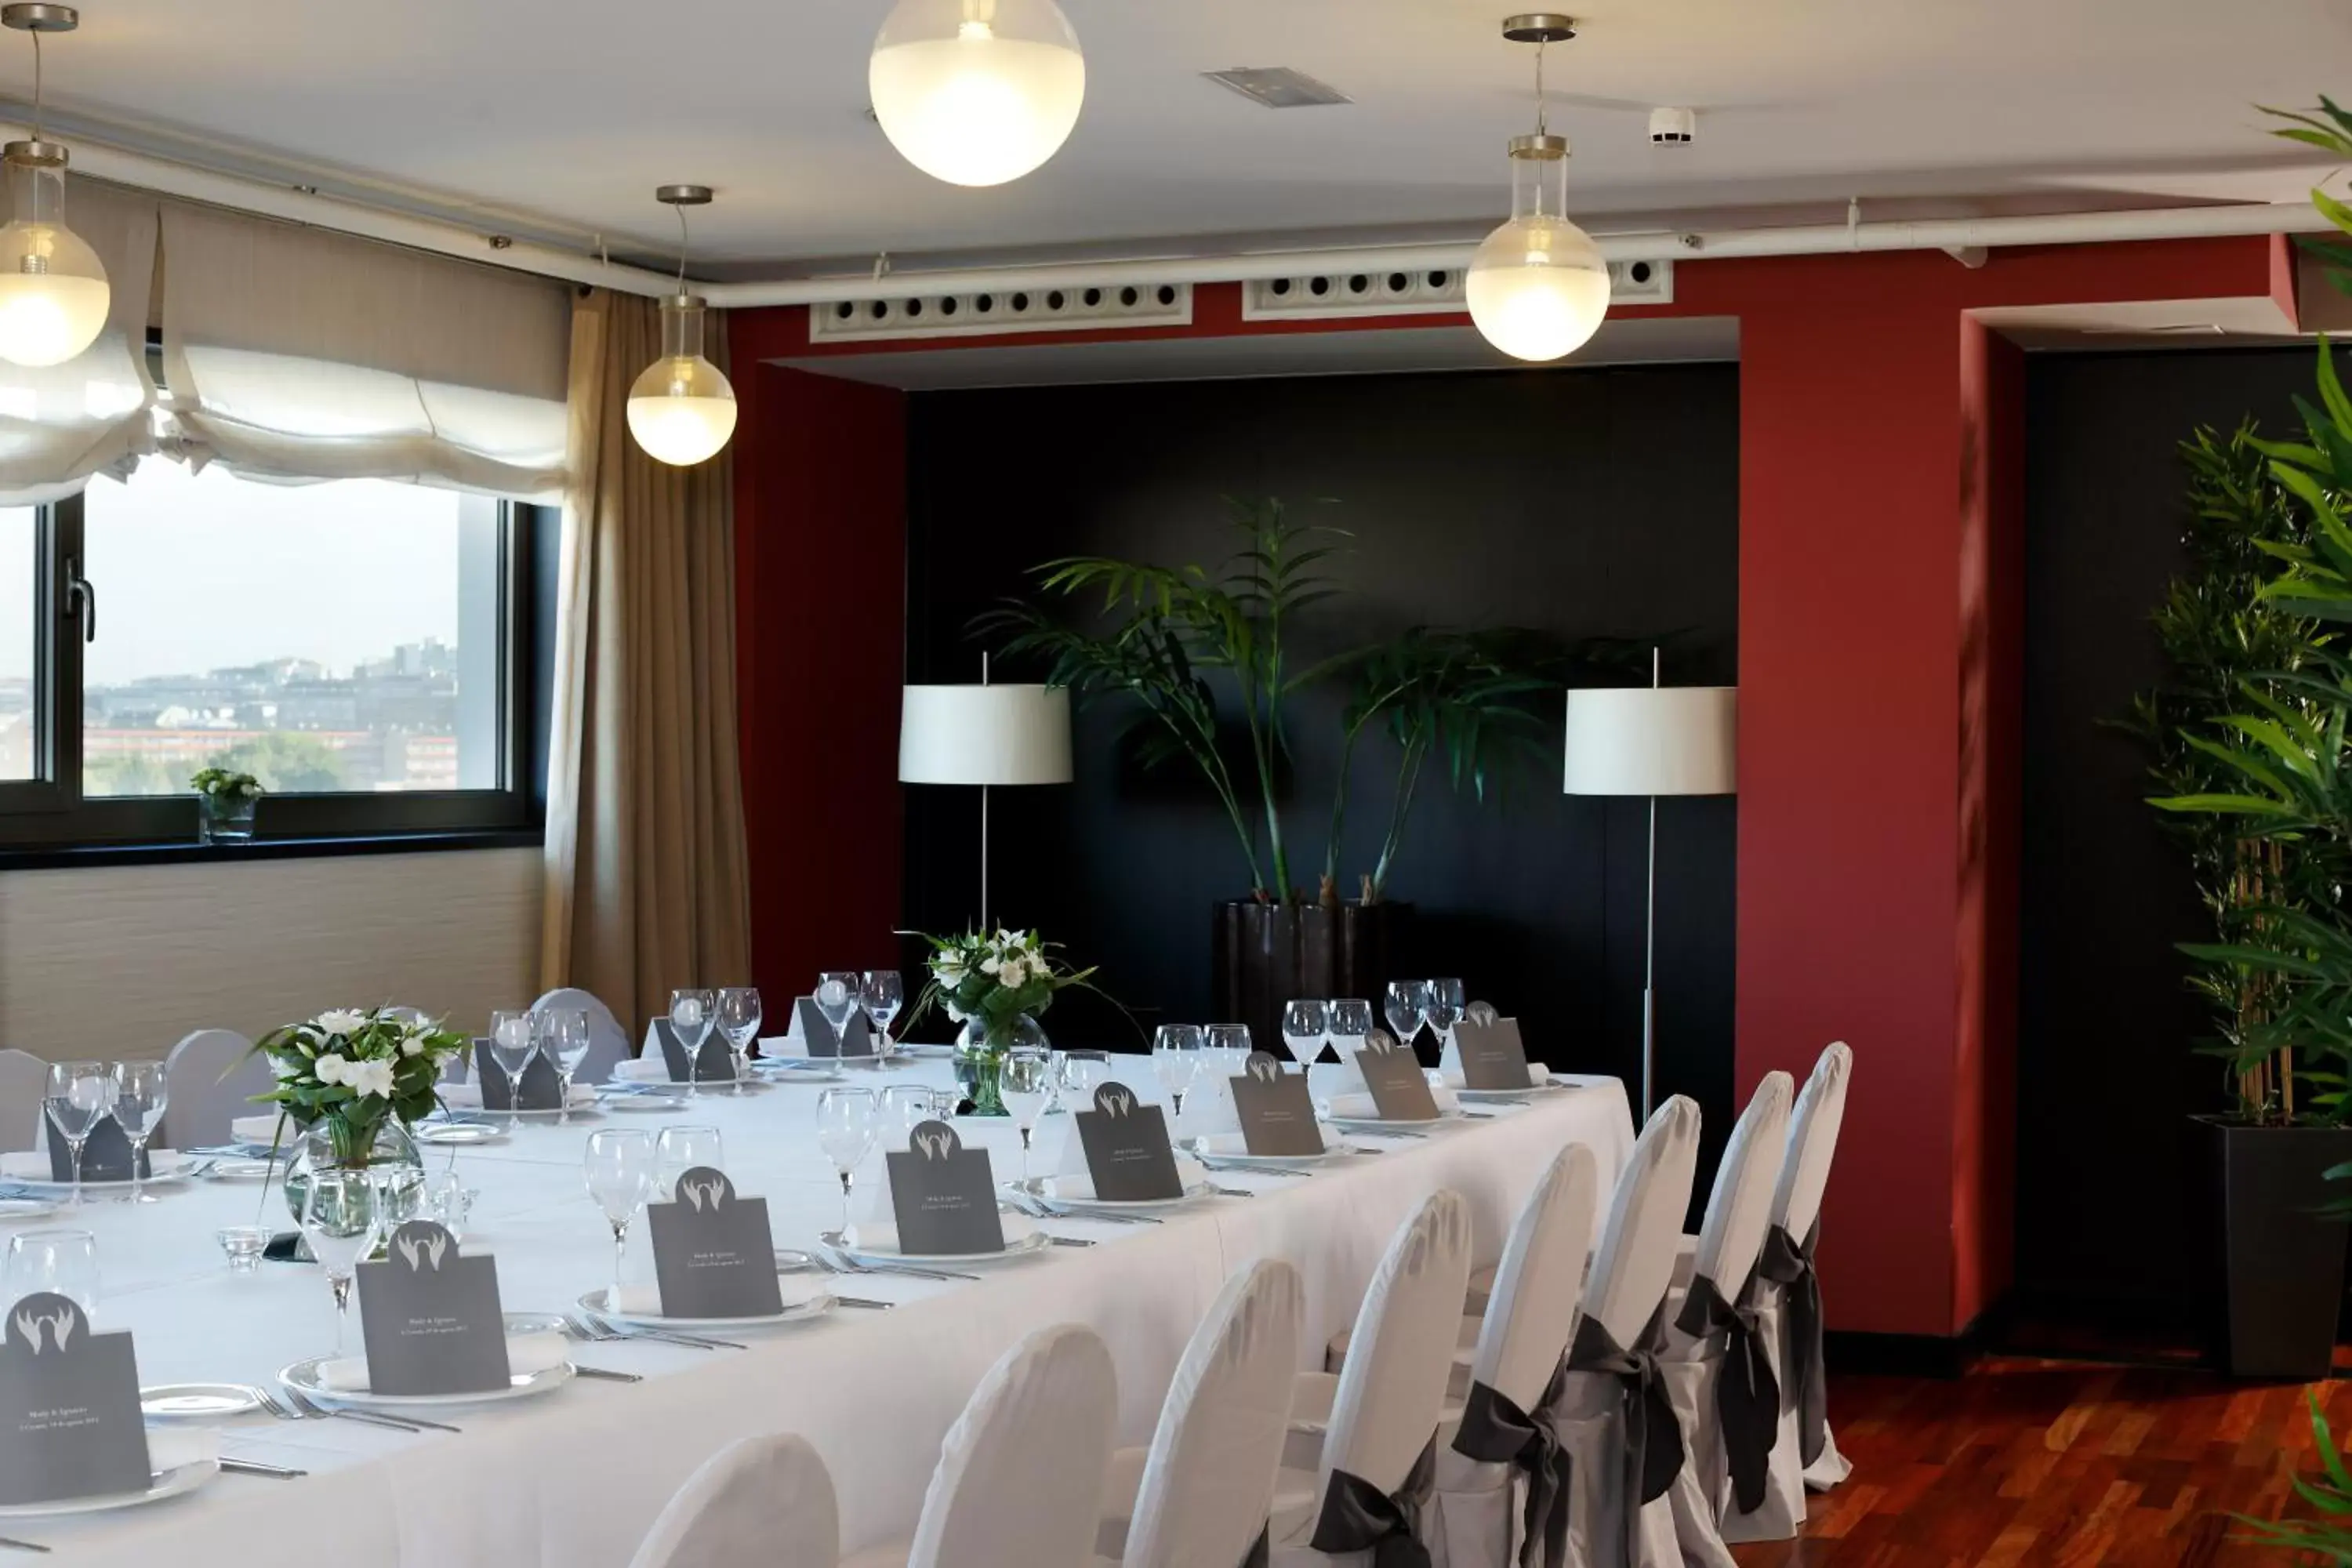 Banquet/Function facilities, Banquet Facilities in Attica21 Coruña